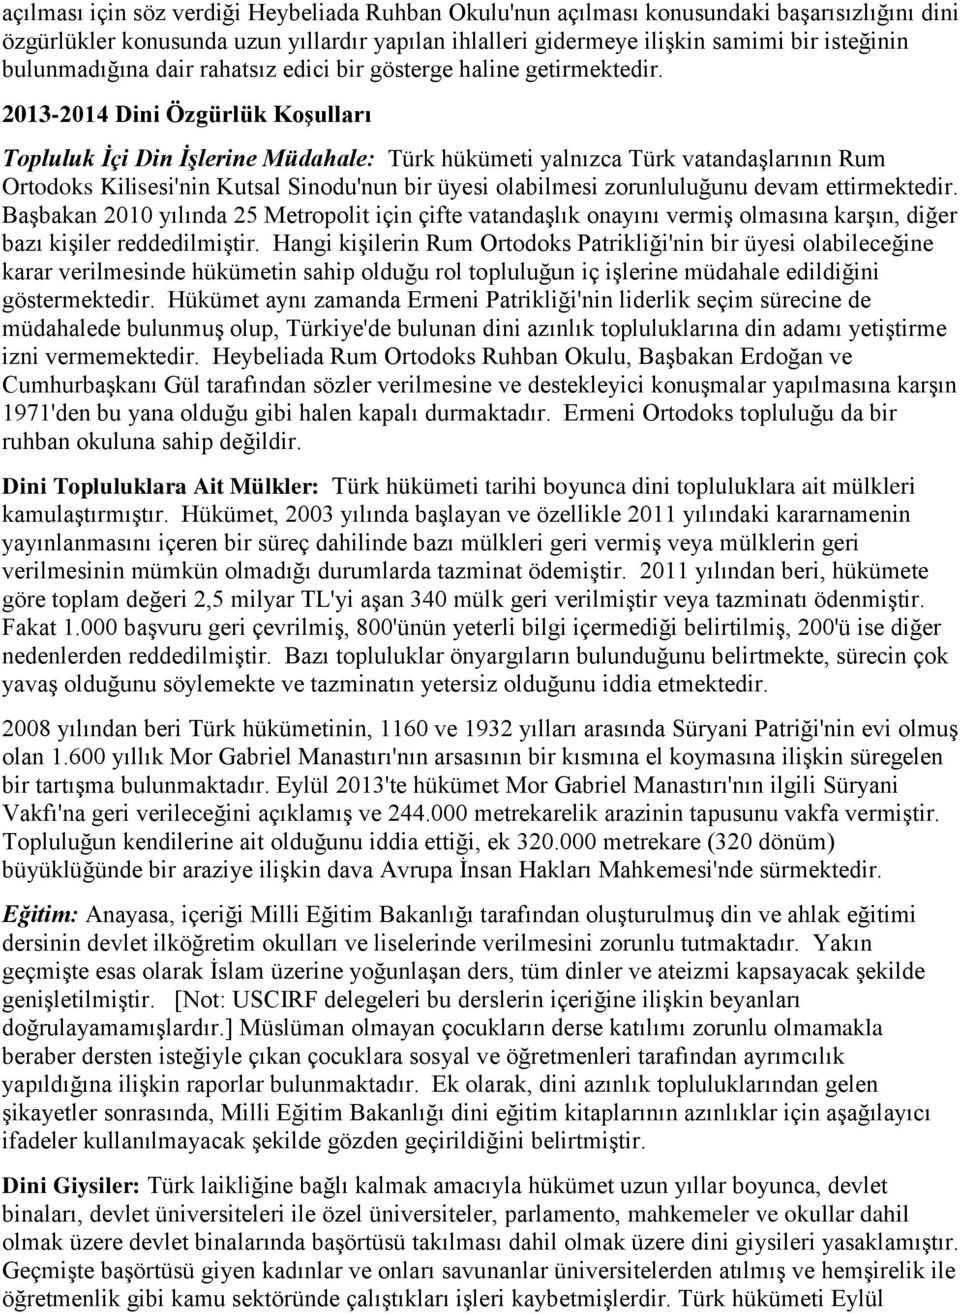 2013-2014 Dini Özgürlük Koşulları Topluluk İçi Din İşlerine Müdahale: Türk hükümeti yalnızca Türk vatandaşlarının Rum Ortodoks Kilisesi'nin Kutsal Sinodu'nun bir üyesi olabilmesi zorunluluğunu devam